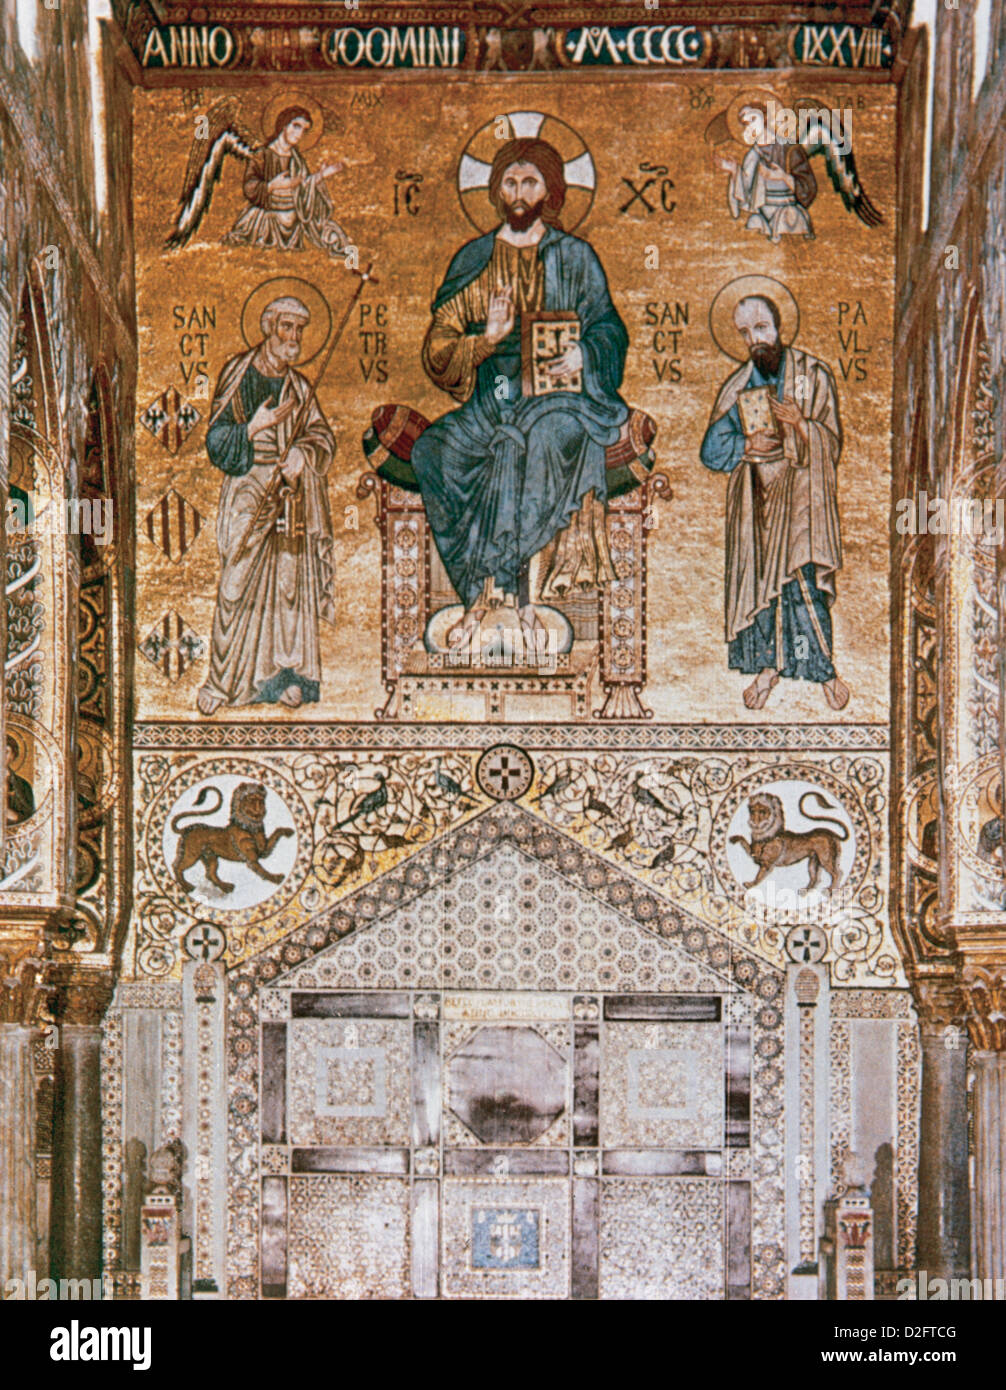 Italien. Sizilien. Palerm. Palast der Normannen. Christus mit St. Peter und Paul über den Thron-Bühne. Byzantinische Mosaik. Stockfoto